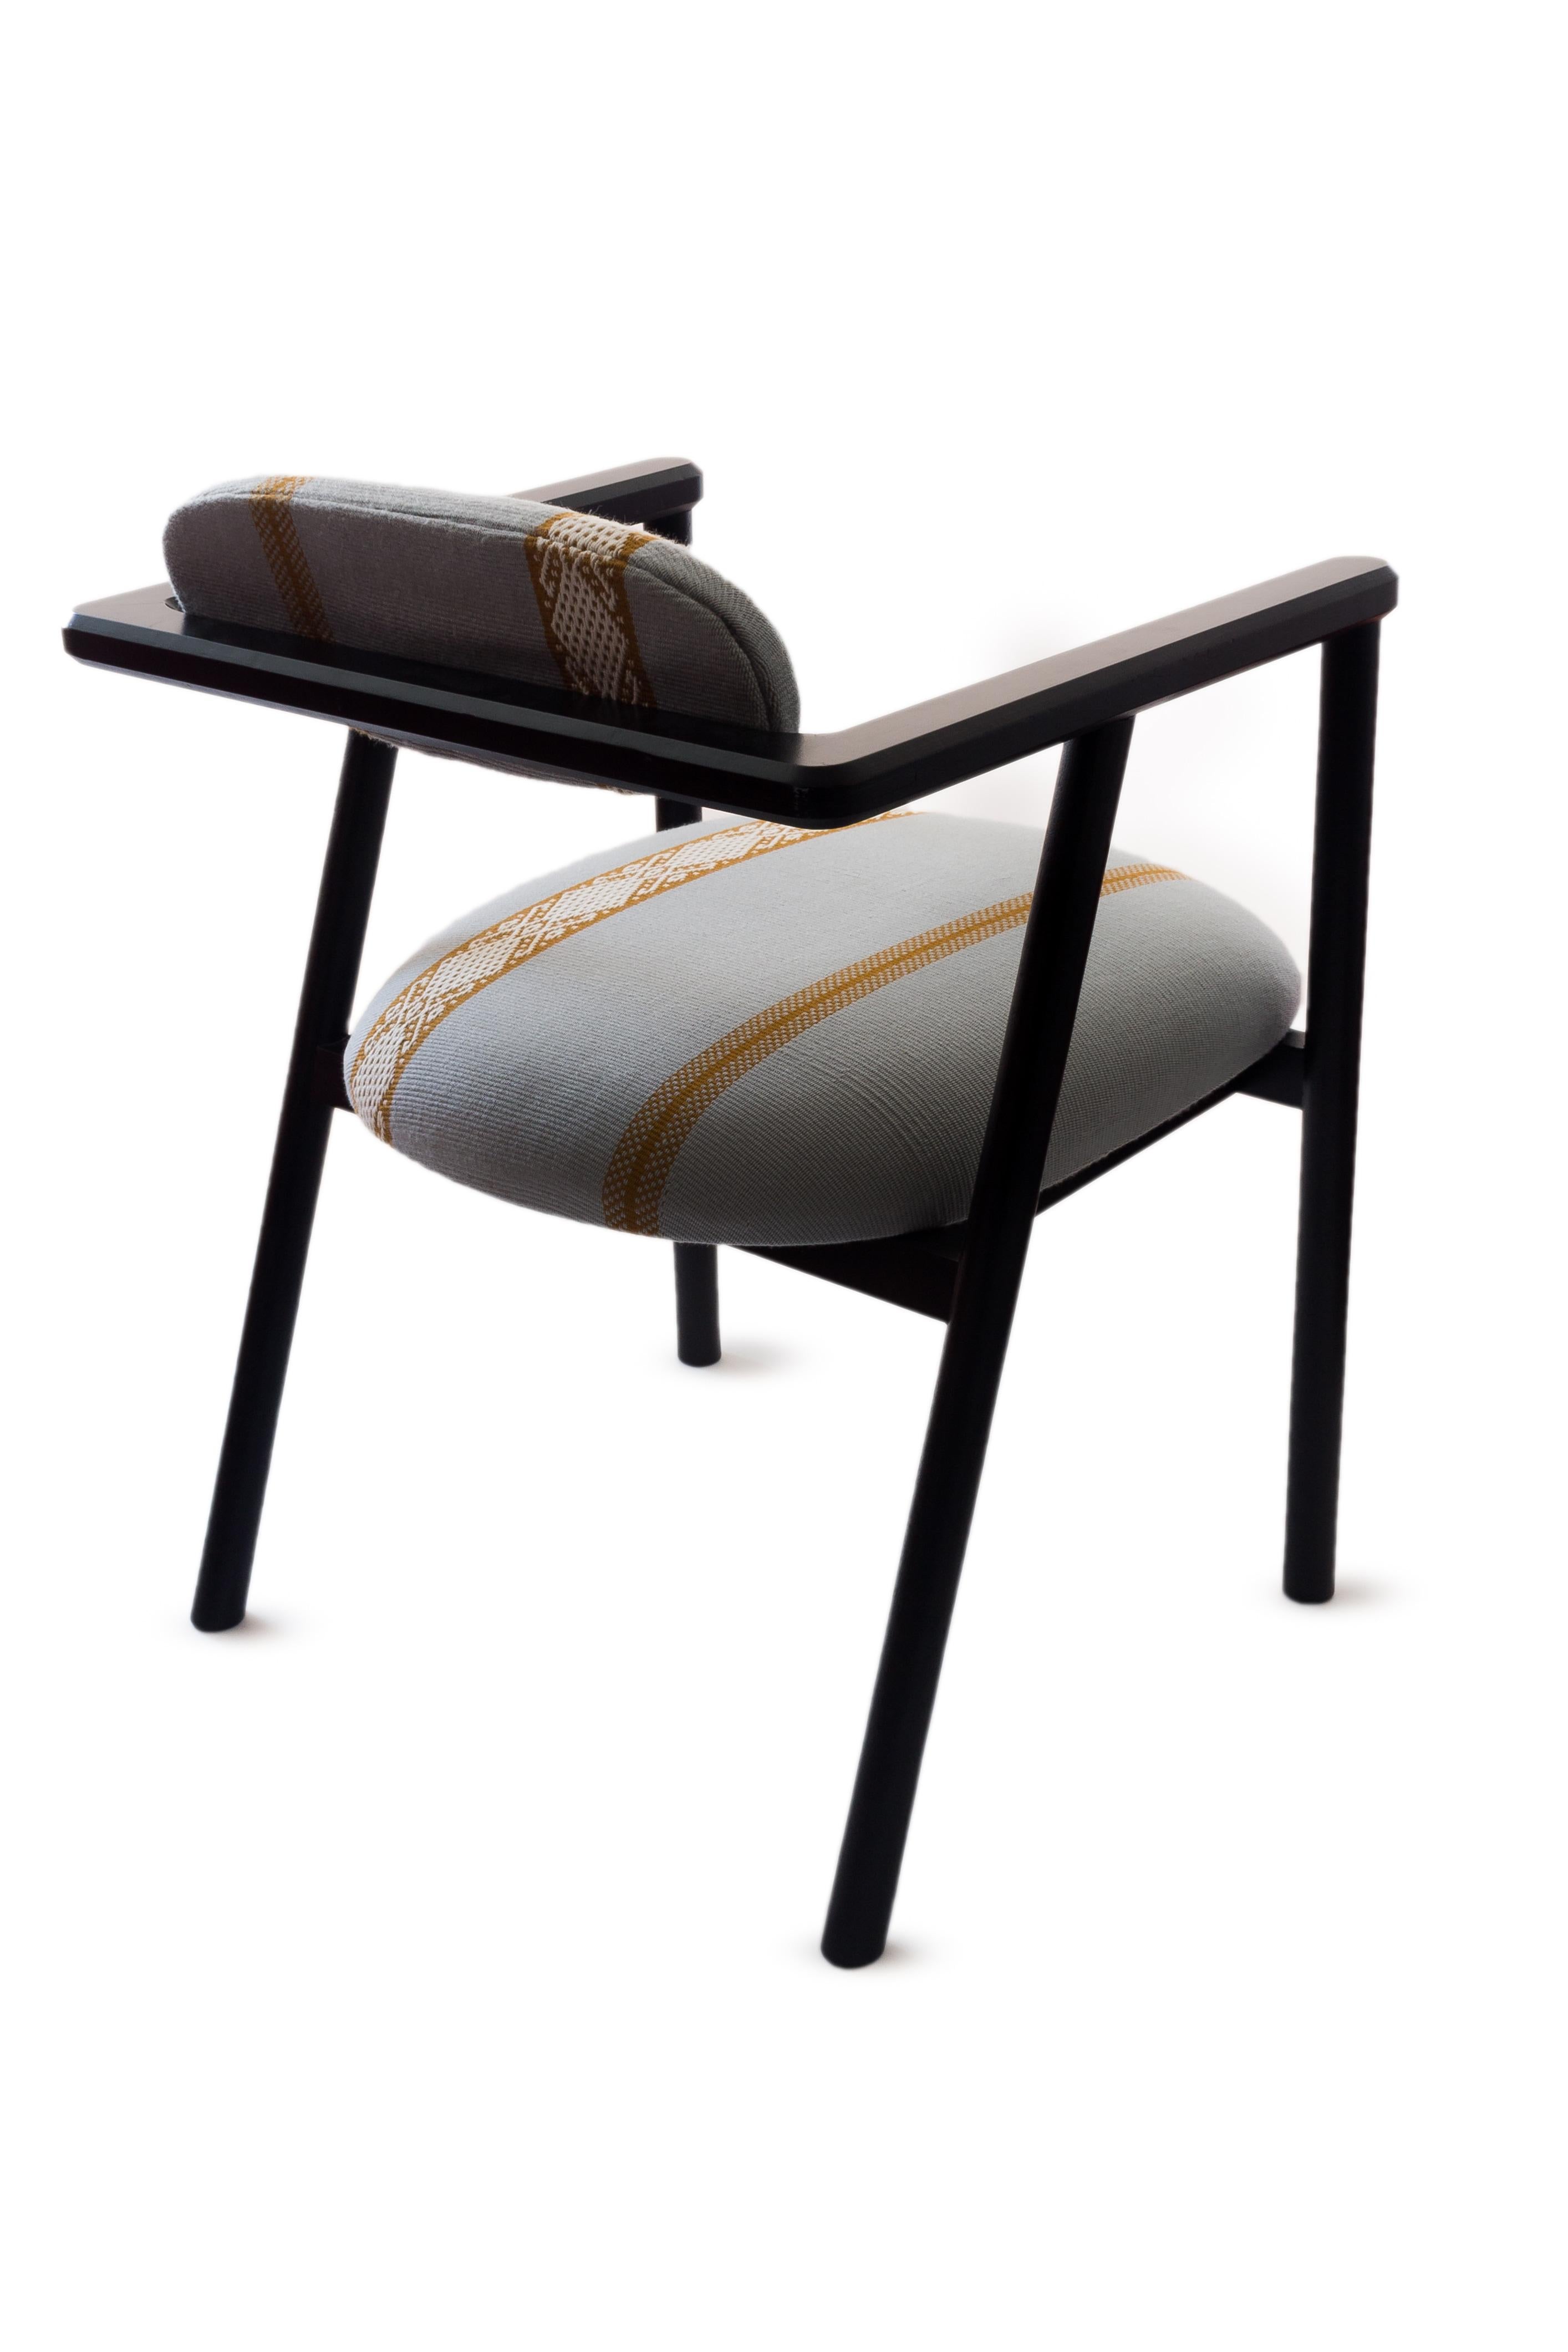 Contemporary Anastasia Chair, by Camilo Andres Rodriguez Marquez